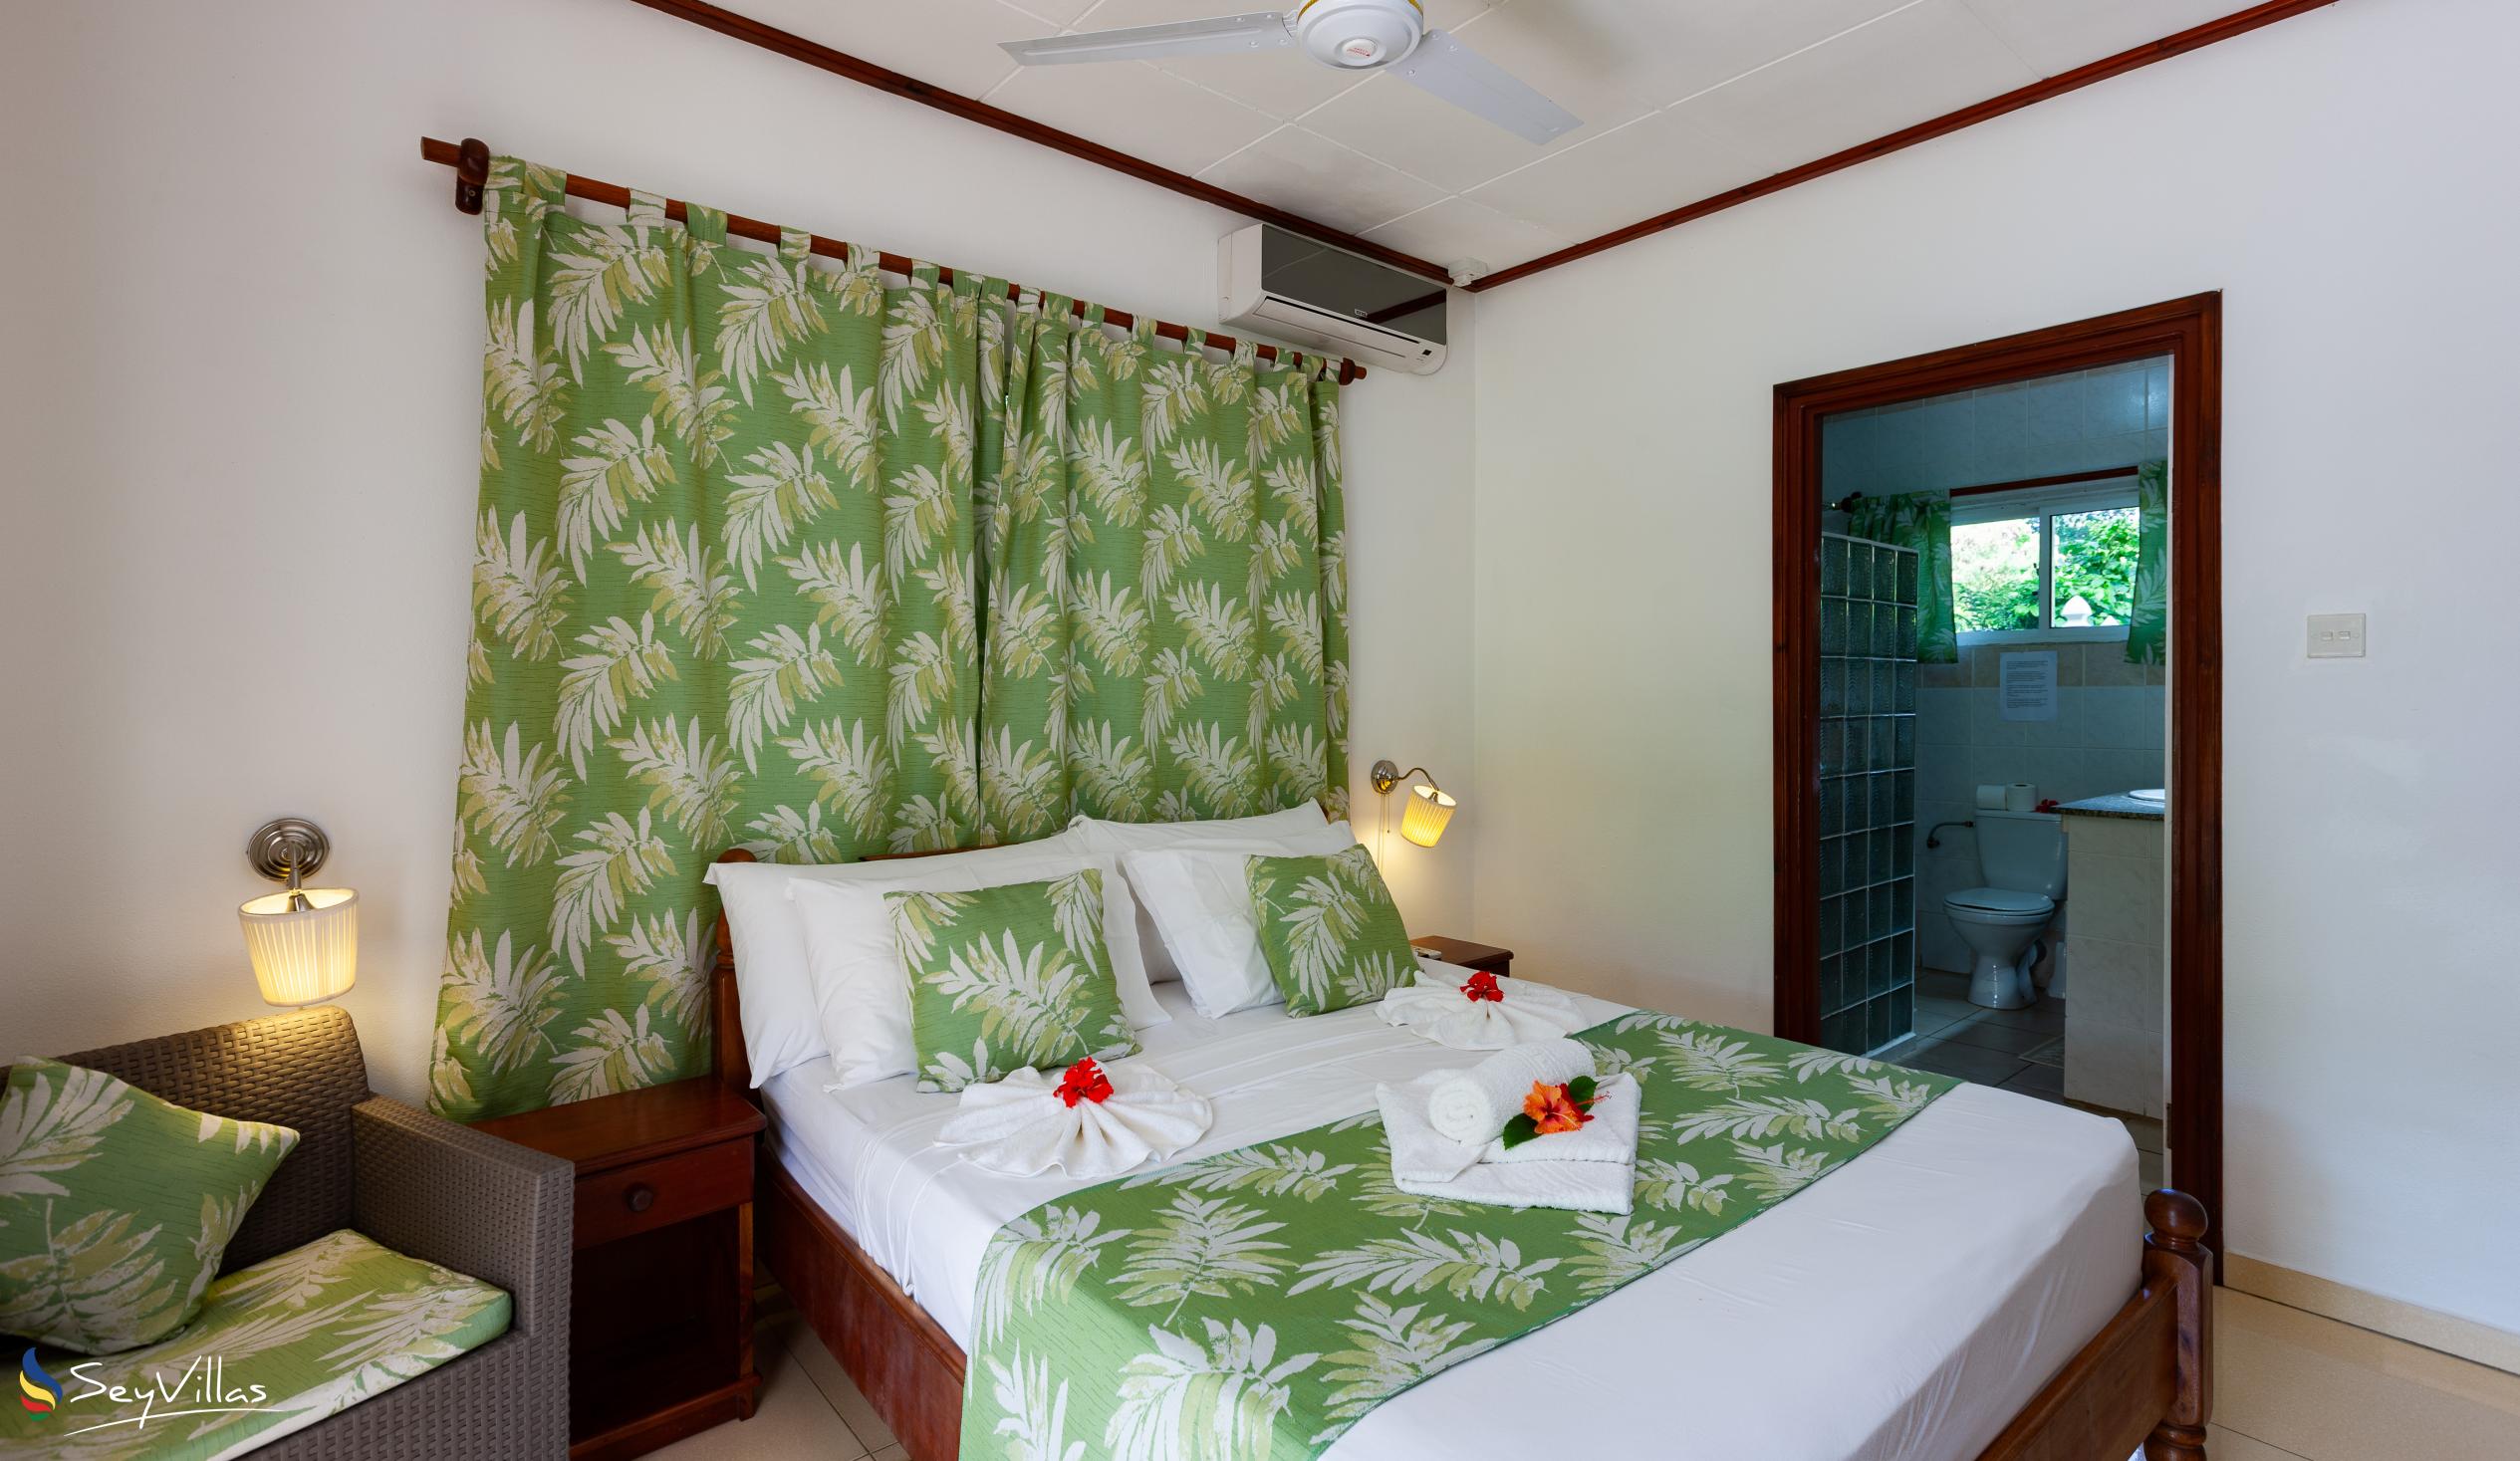 Photo 44: Pension Hibiscus - Maison Alice - Standard Apartment - La Digue (Seychelles)